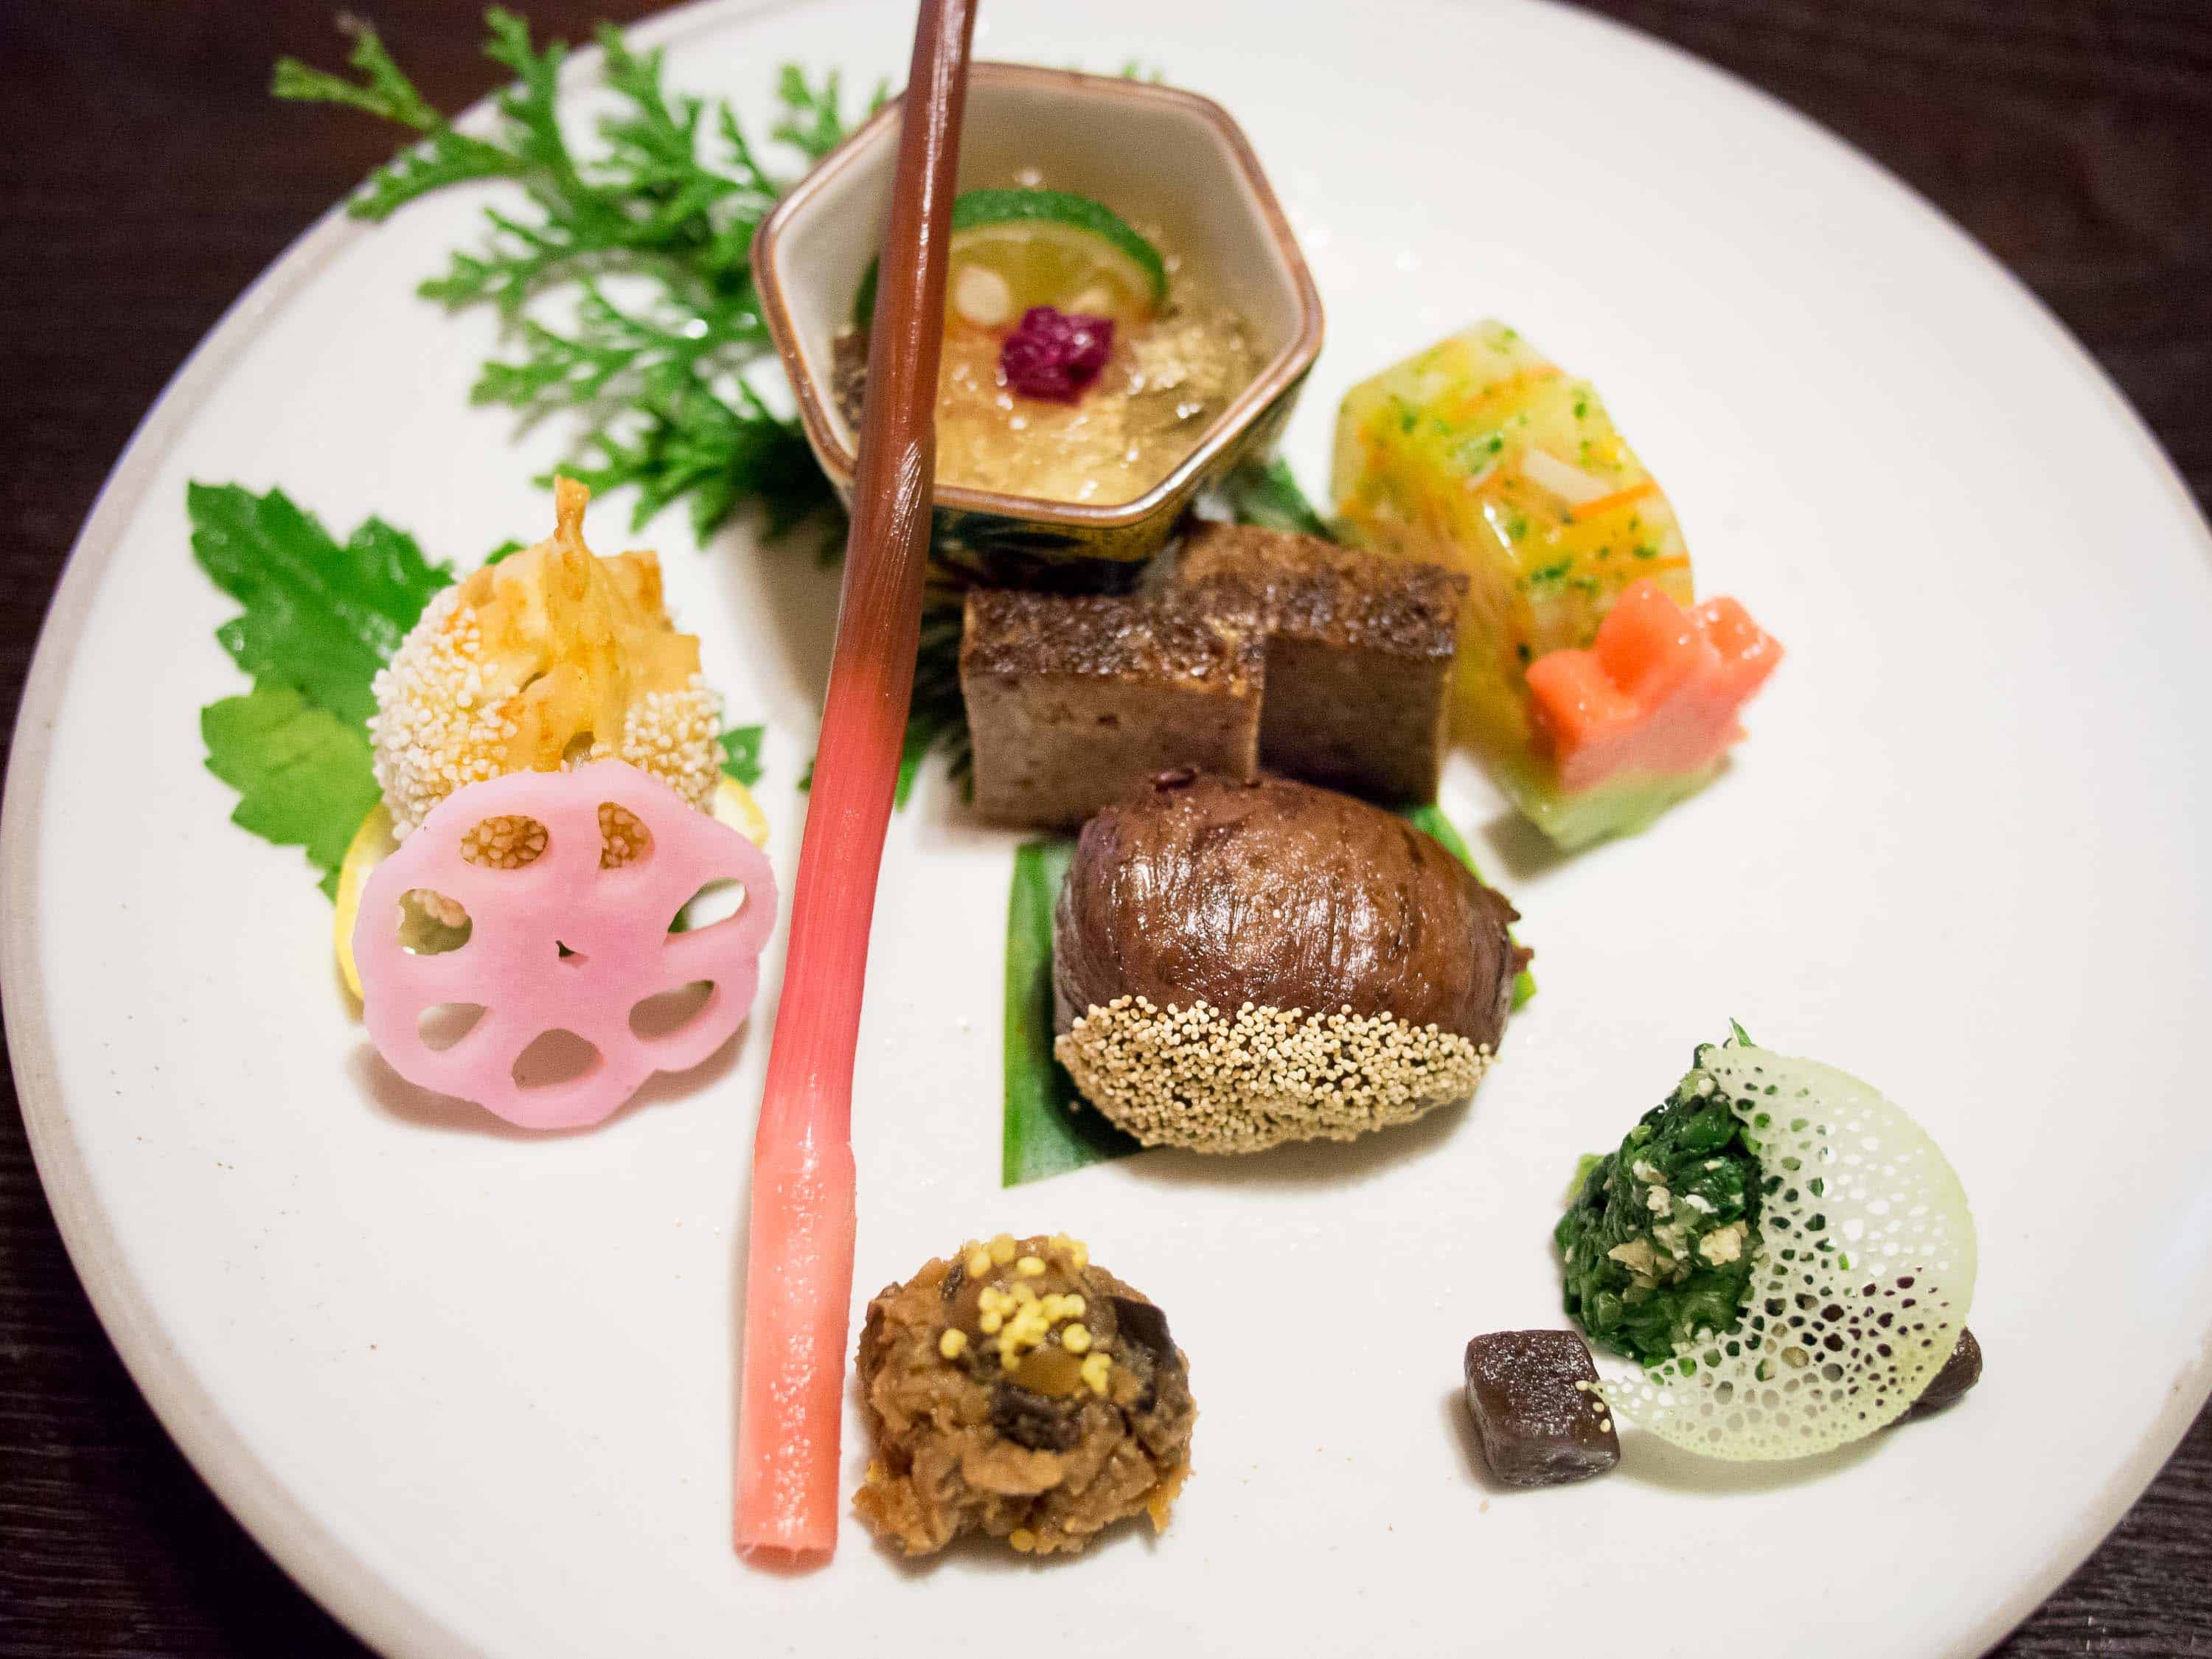 7 of the Coolest Restaurants in Tokyo